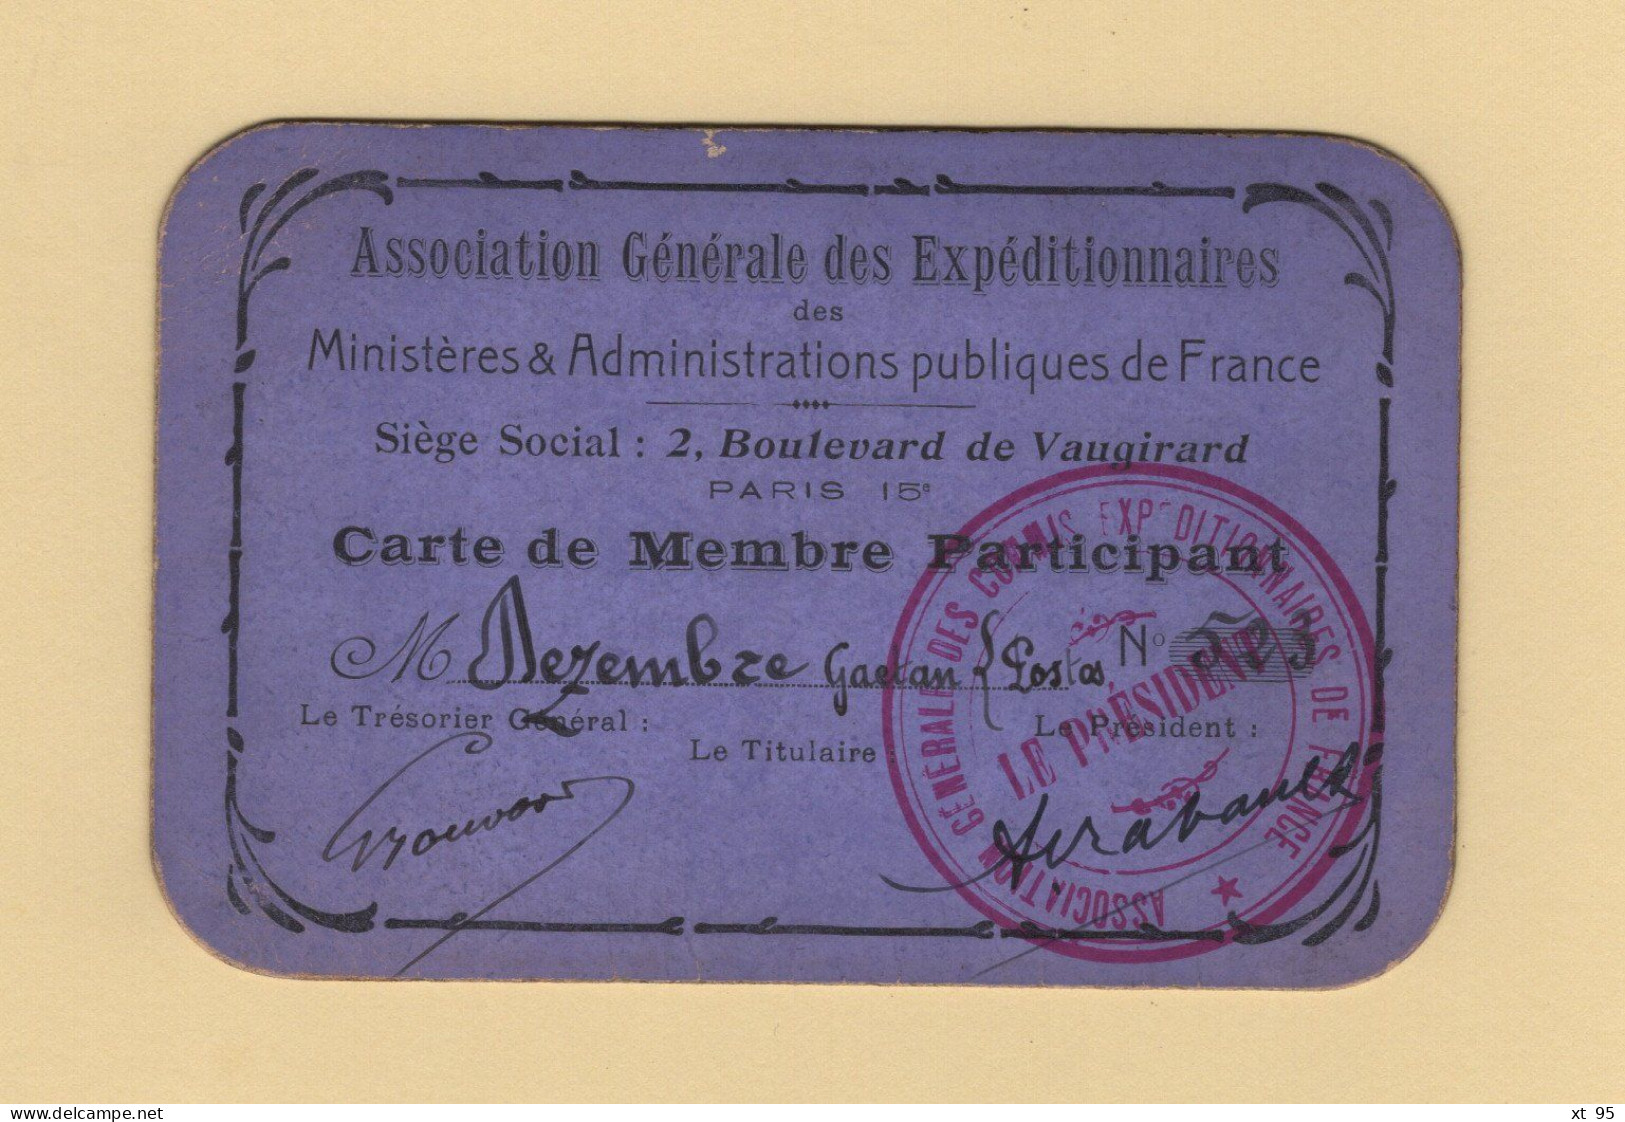 Carte De Membre Participant - Association Generale Des Expeditionnaires - Commis Expeditionnaire - Postes - Membership Cards